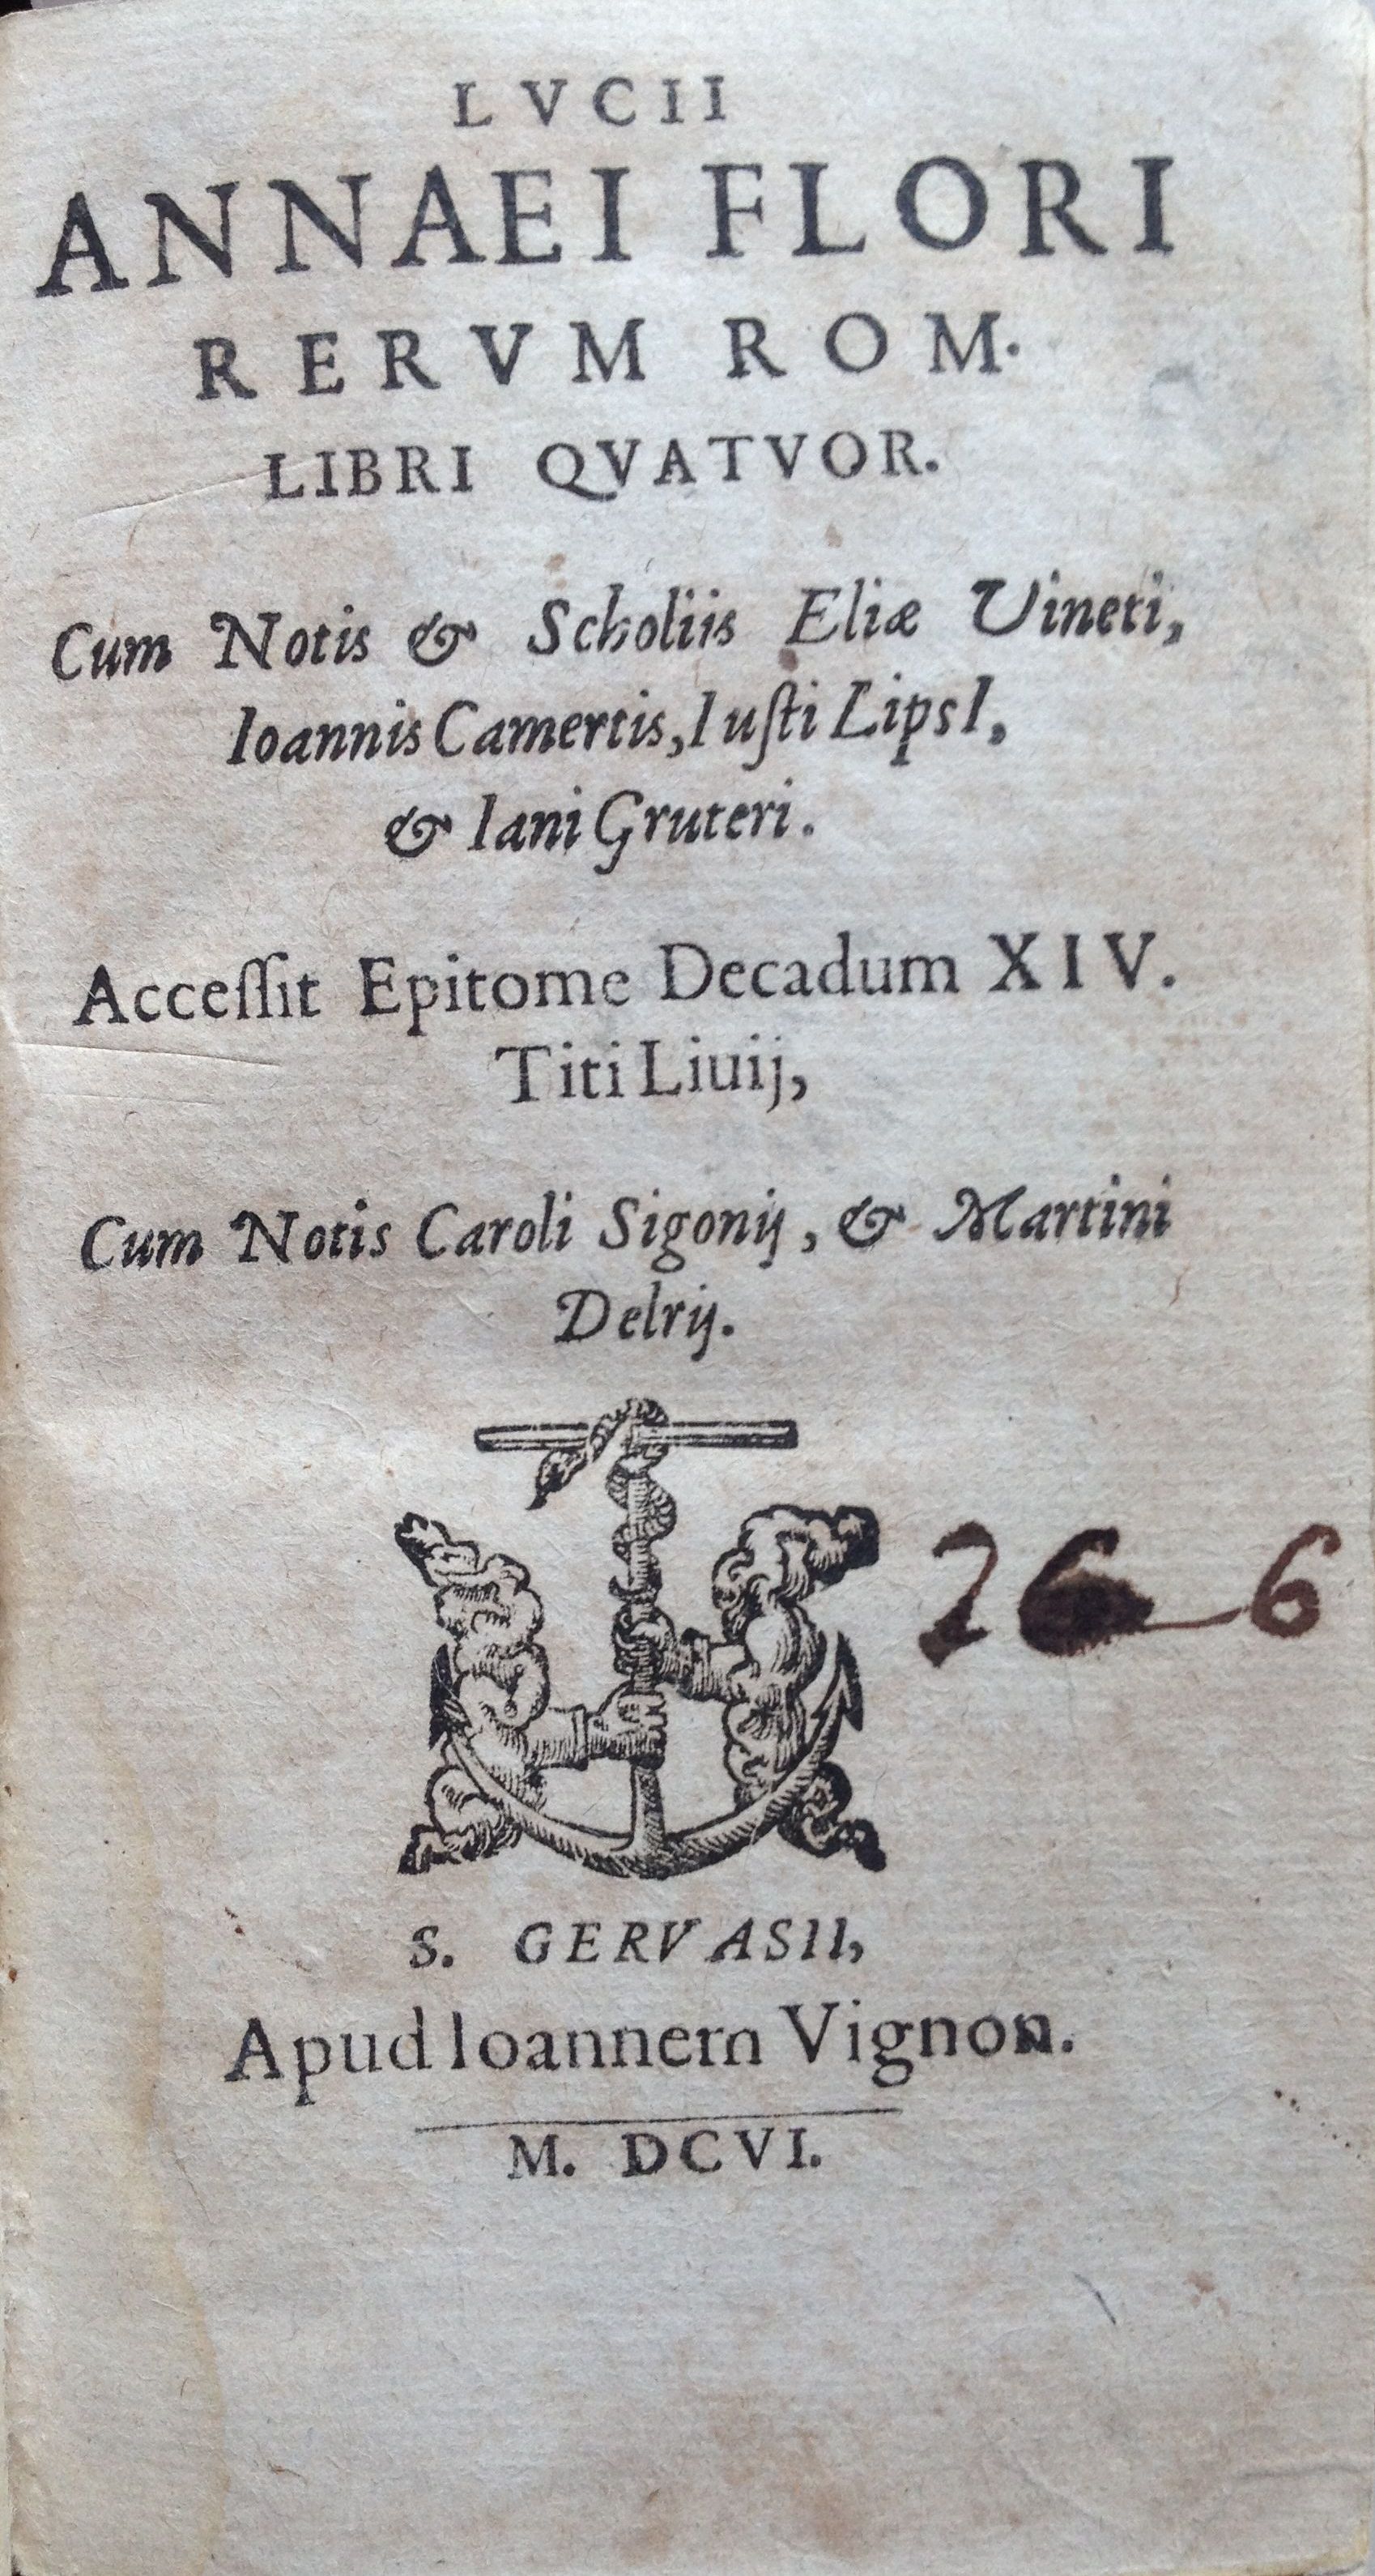 Rerum Rom. libri quatuor, 1606